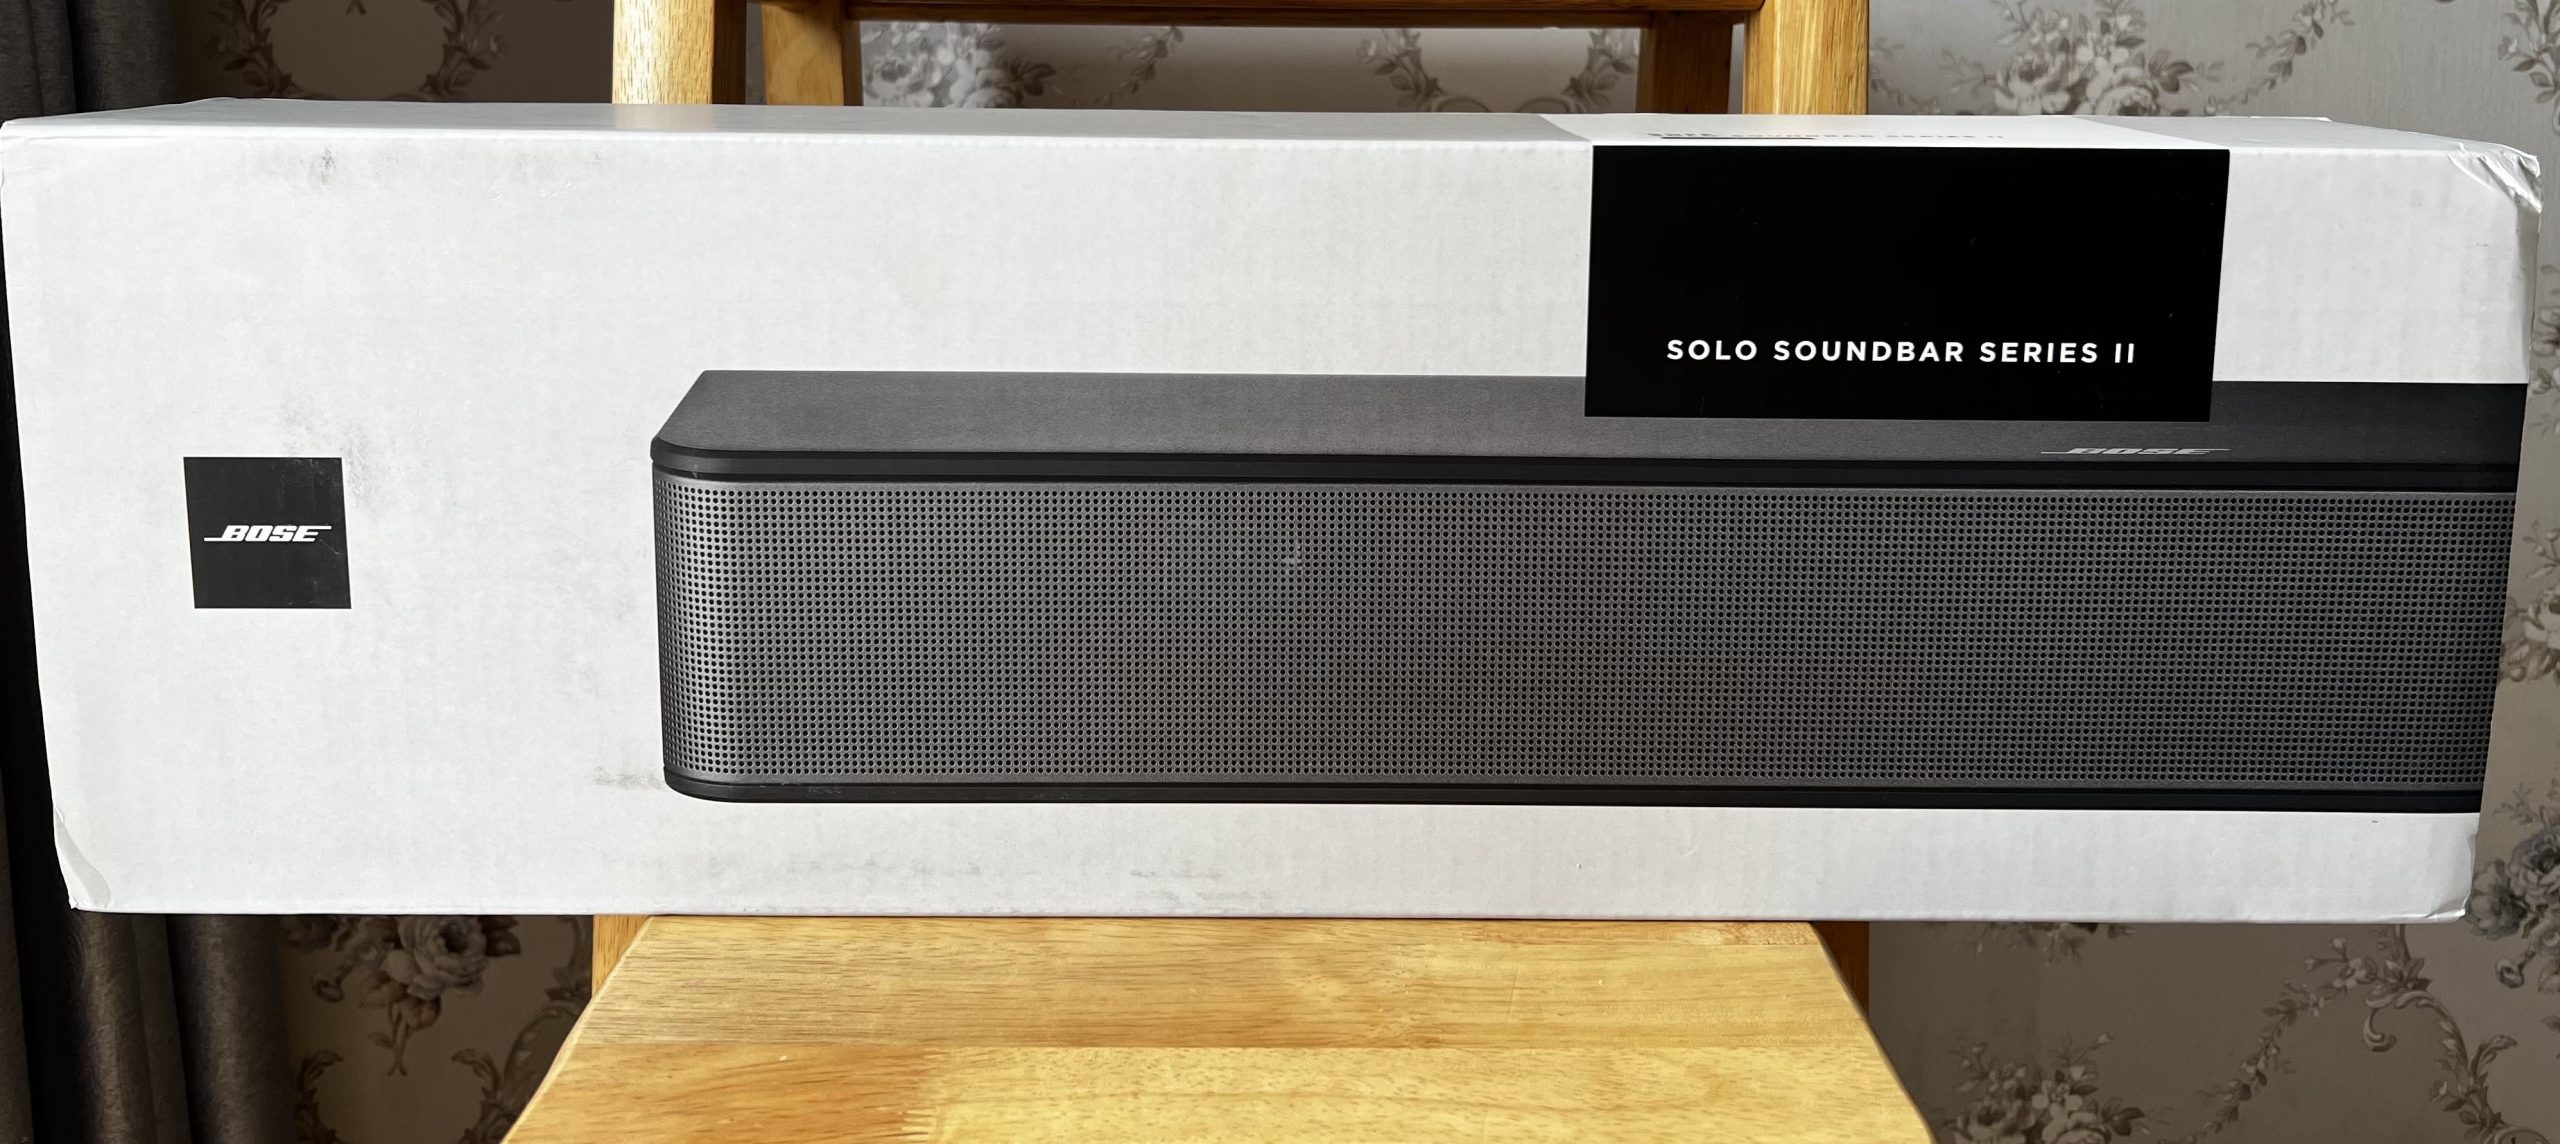 Loa tivi Bose Solo Soundbar Series II